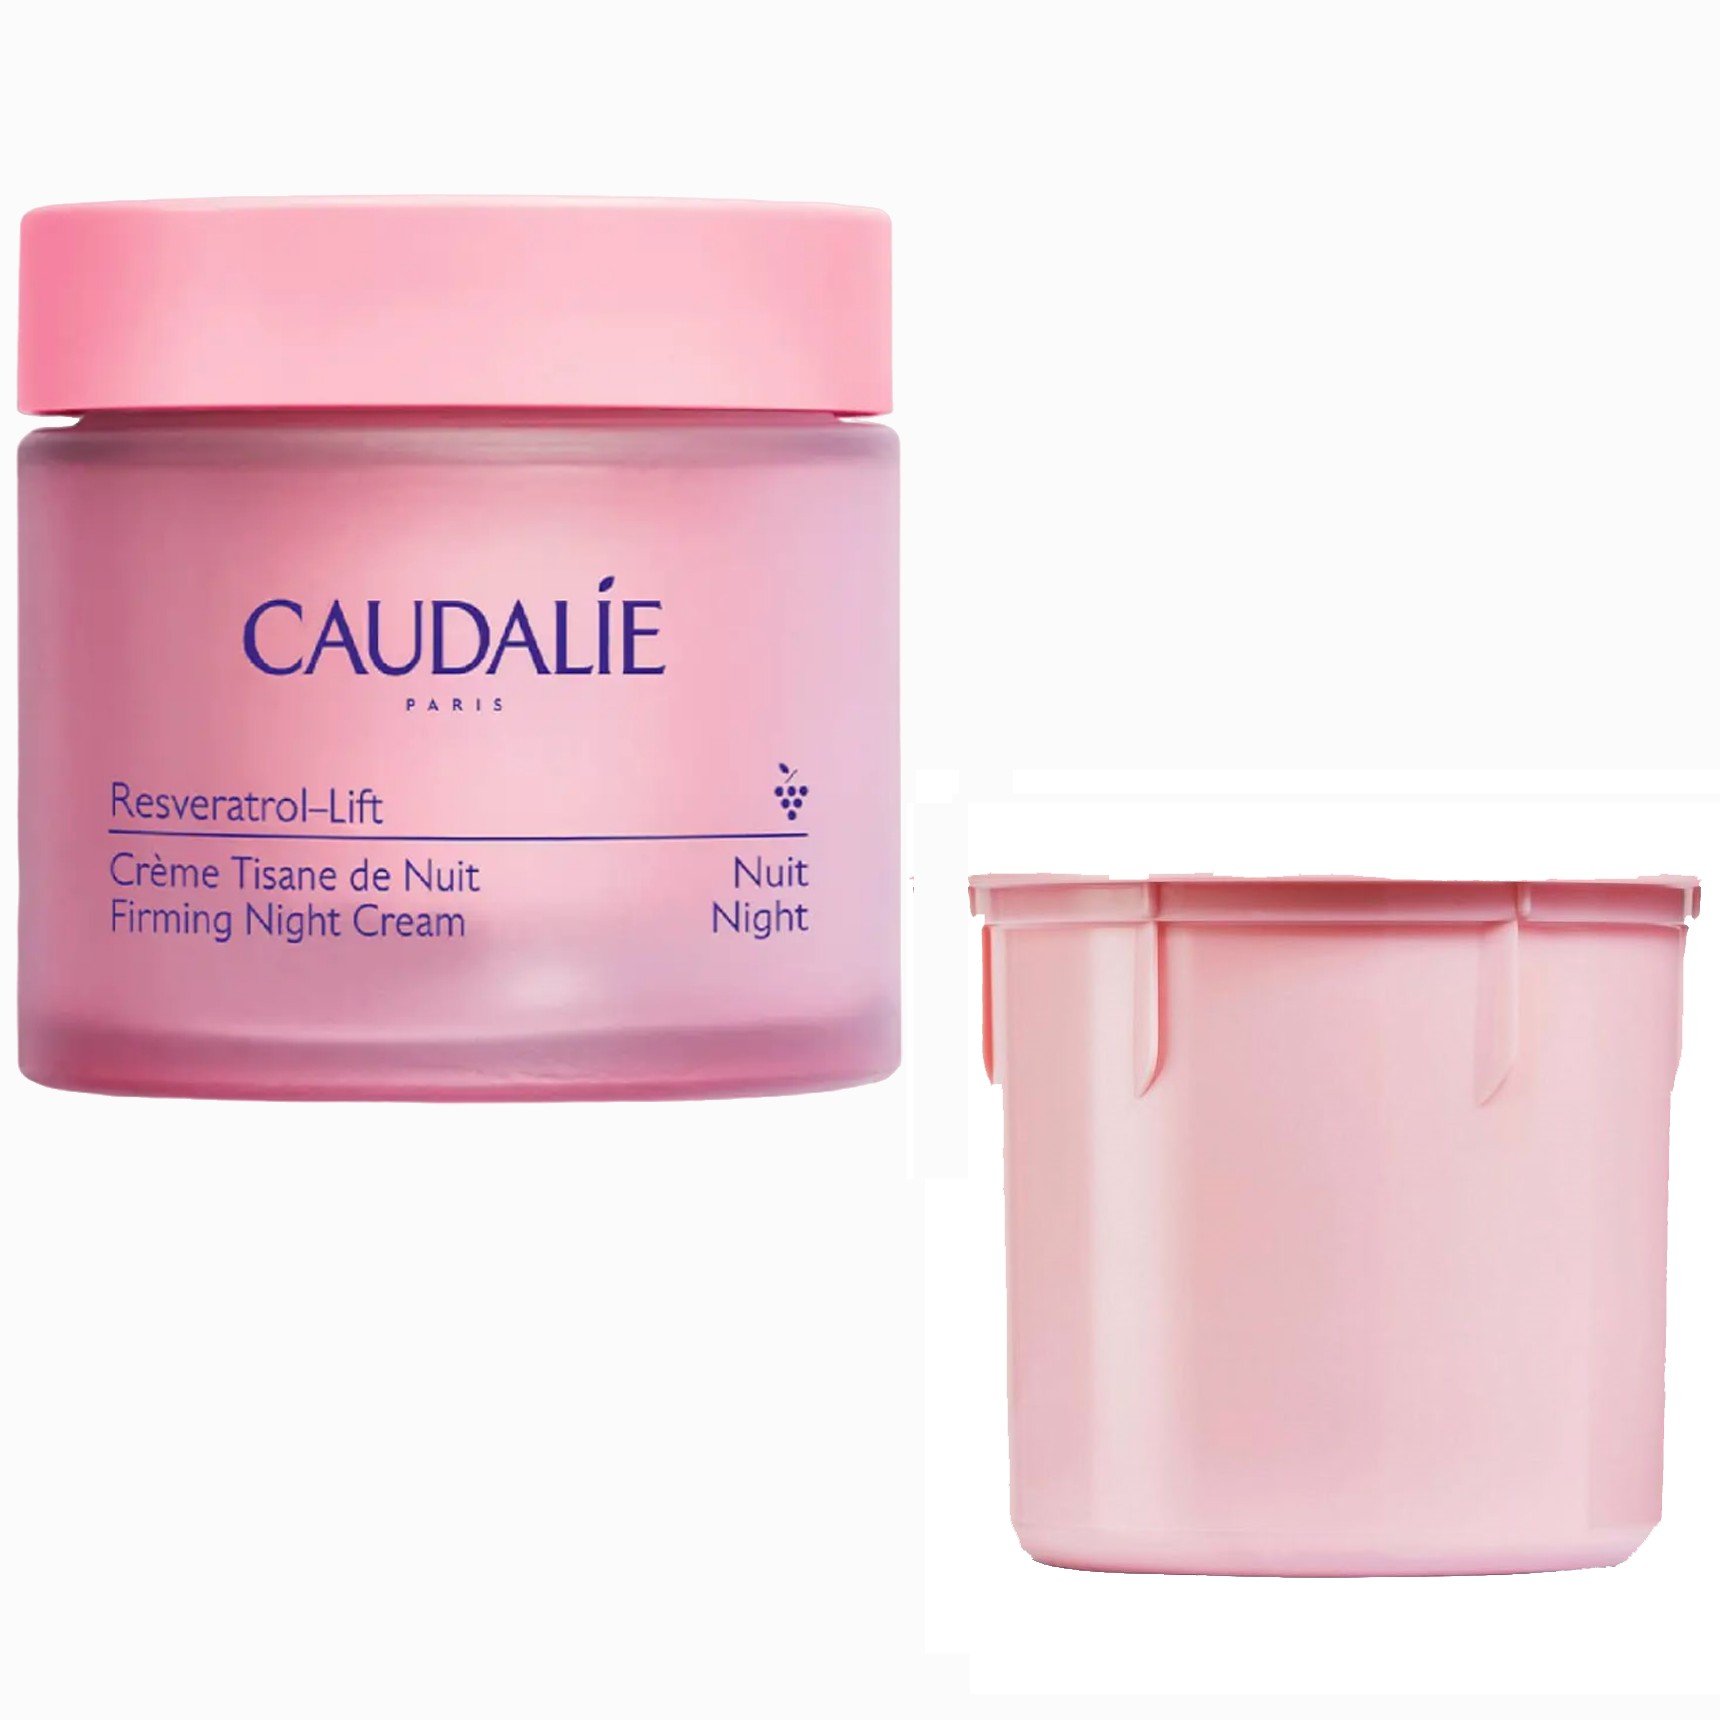 Ночной крем для лица Caudalie Resveratrol-Lift (сменный блок) 50 мл - фото 1